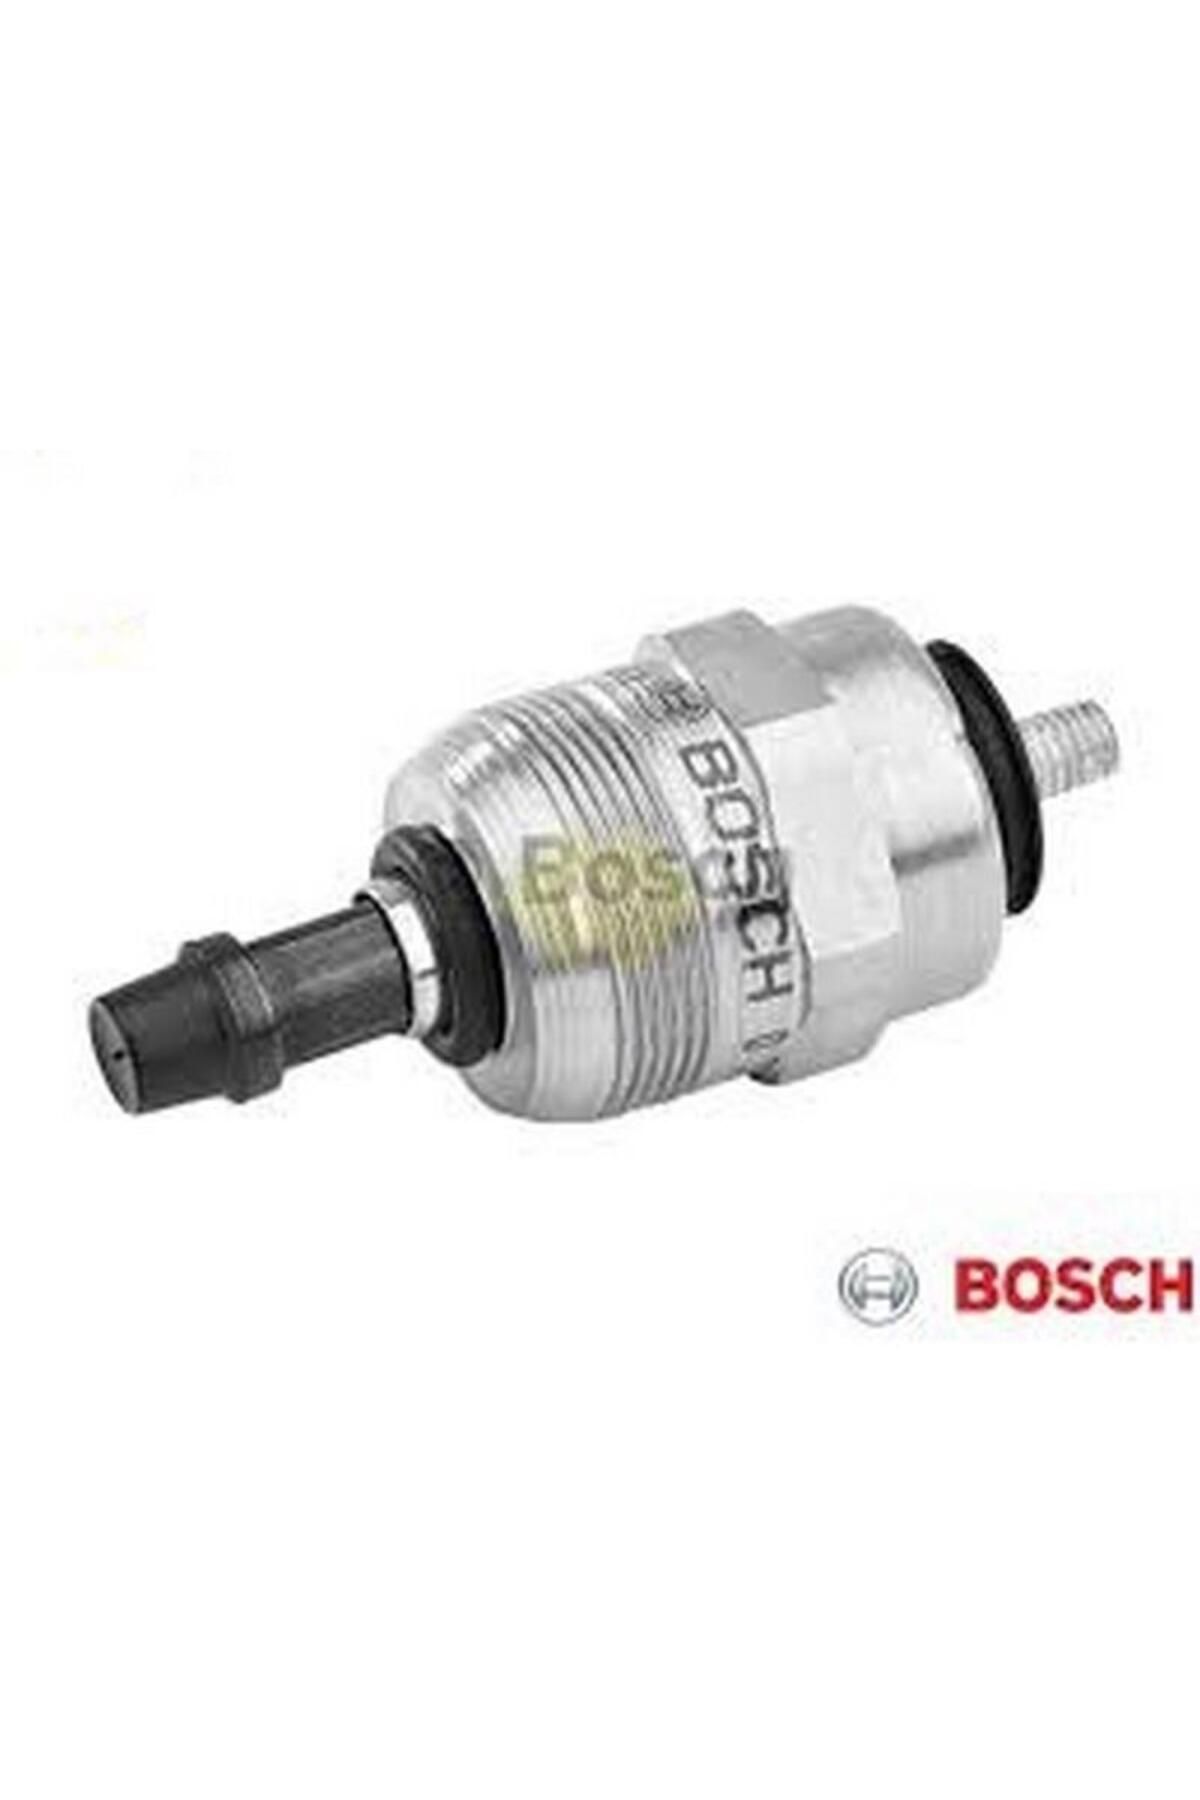 Bosch 12v Pompa Stop Müşürü